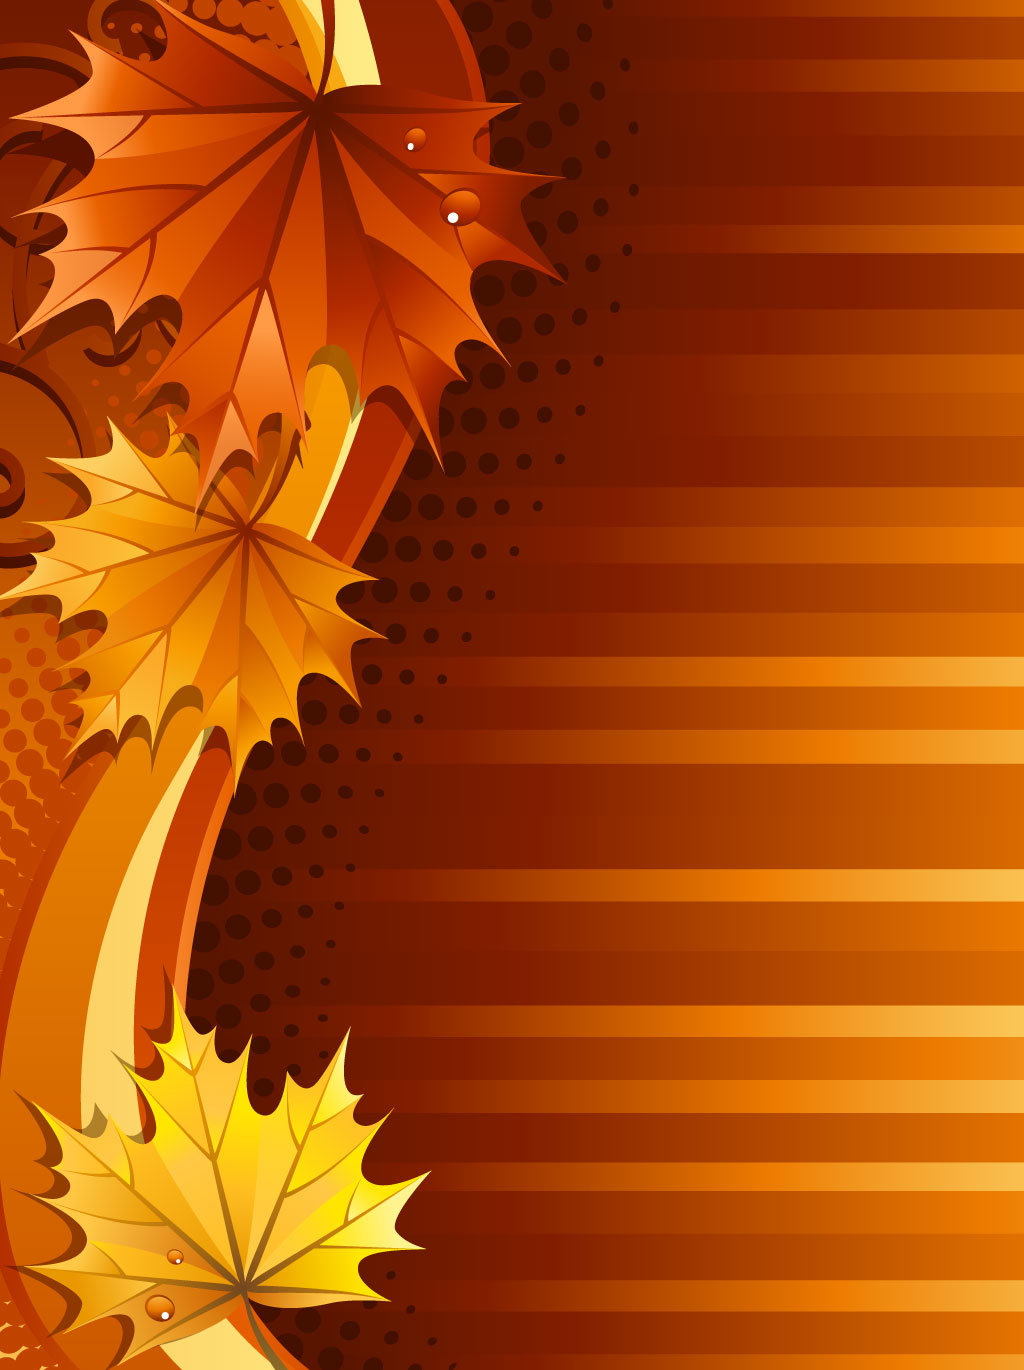 12 Fall Leaf Background Design Images